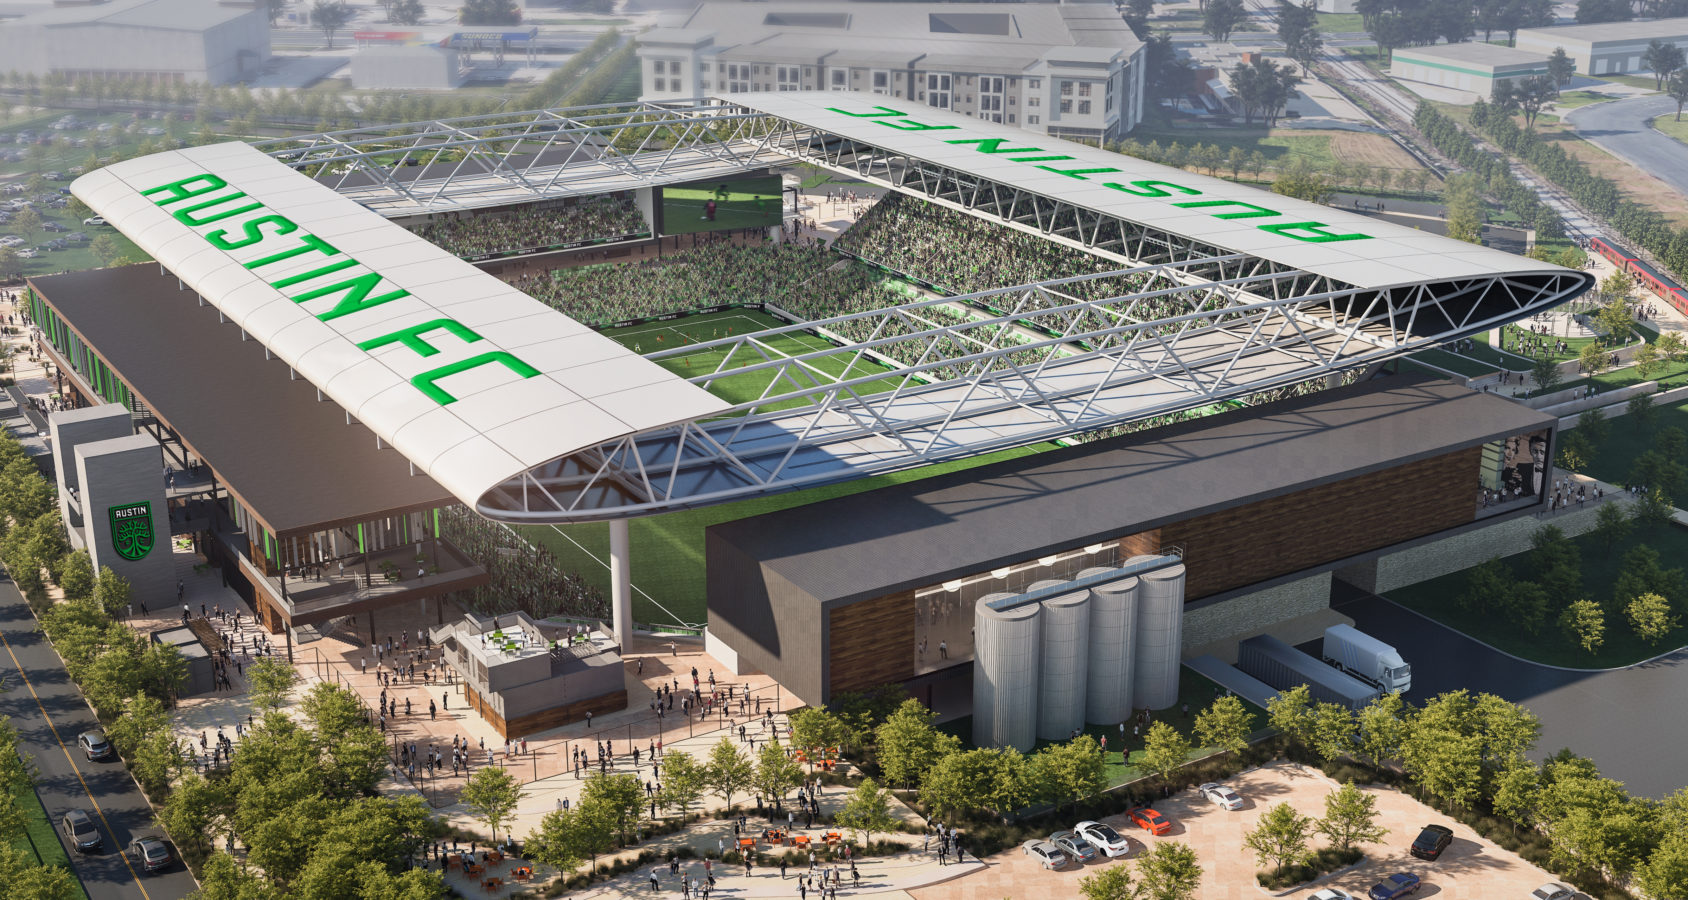 New Columbus Crew SC Stadium Plans Unveiled - Soccer Stadium Digest